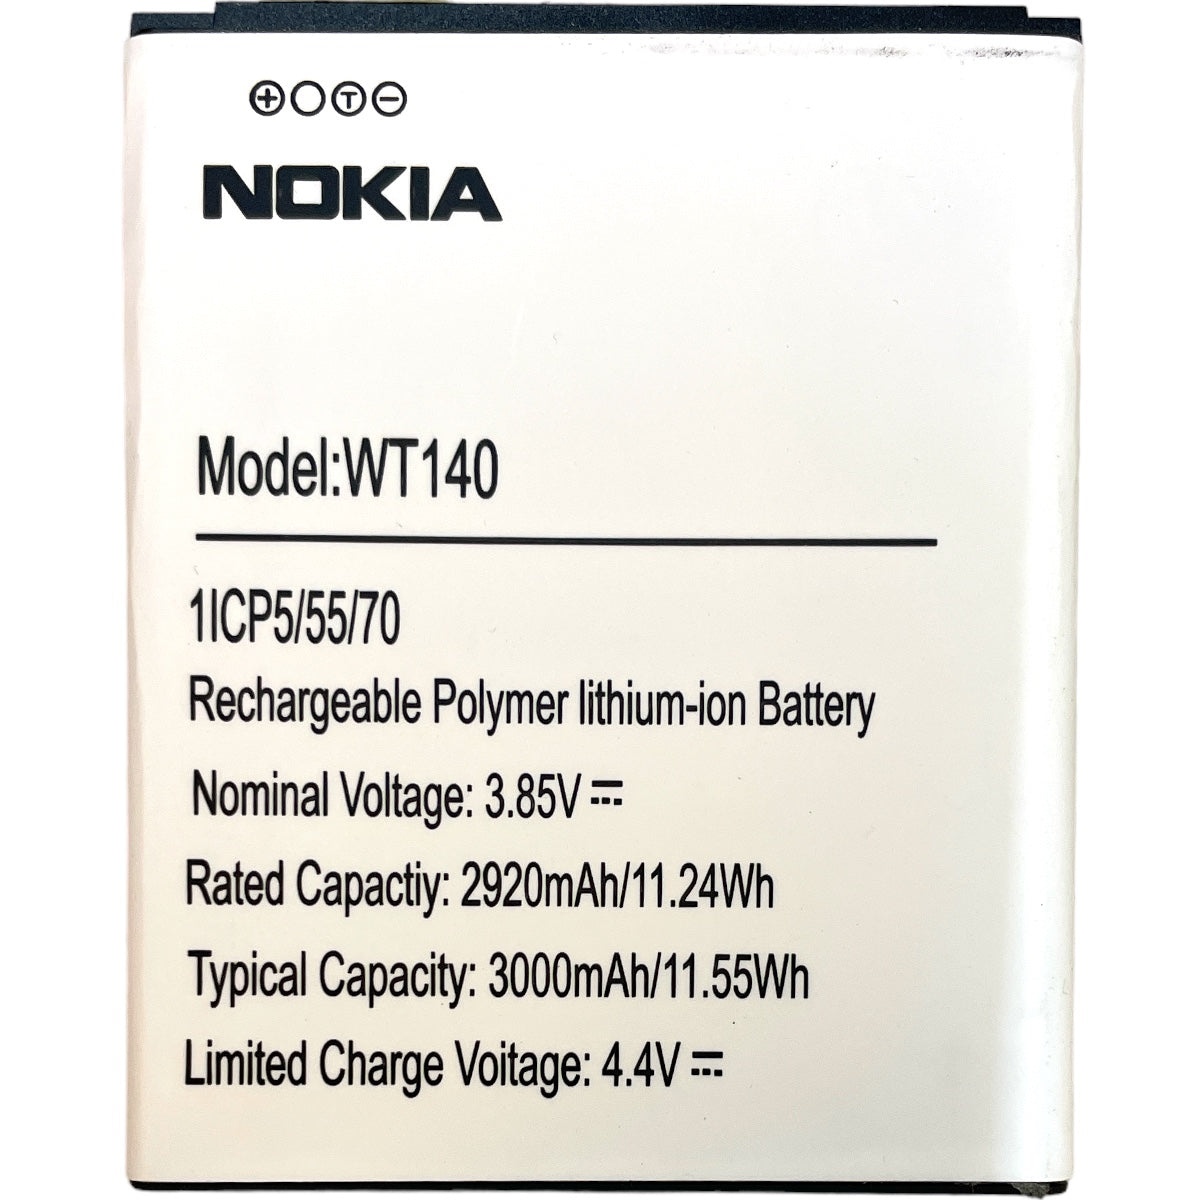 Batería Nokia BL-5C Universal Bocina 1020mAh – MK Cell Mexico